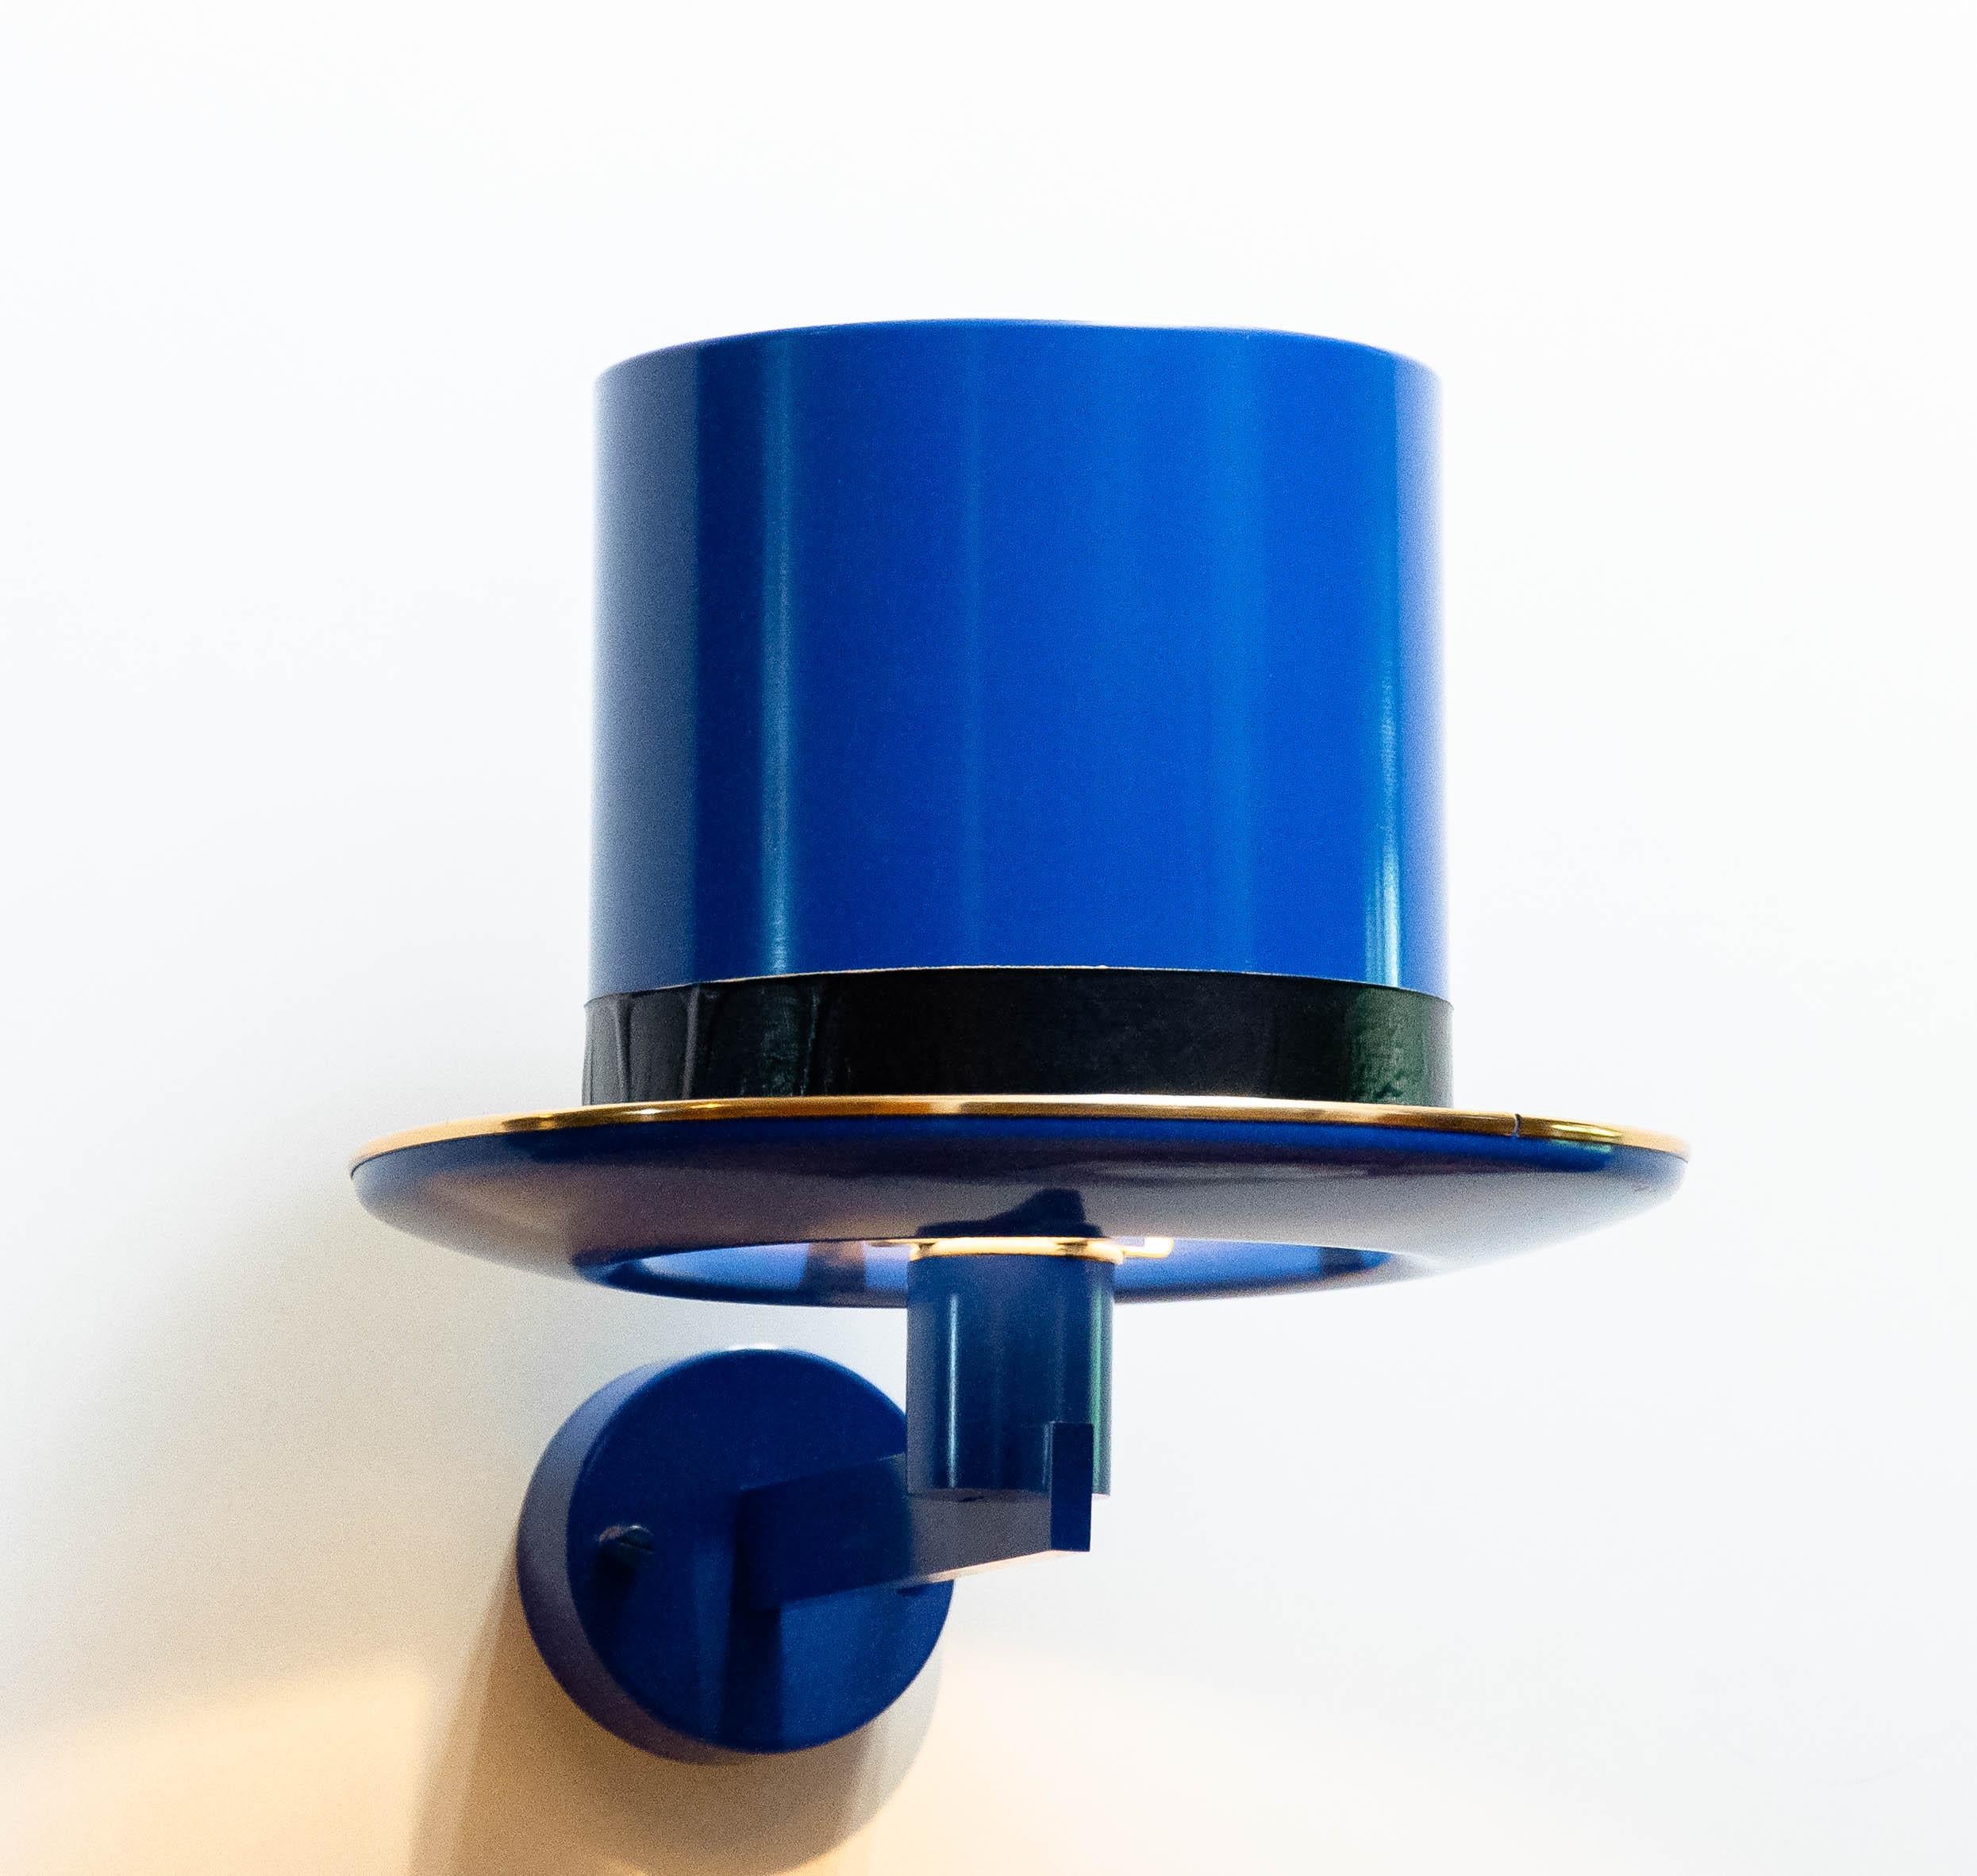 Wunderschöne surreale Top-Light-Wandleuchte aus blau lackiertem Aluminium und Messing, entworfen von Hans Agne Jakobsson in den 1960er Jahren für HAJ AB Markaryd Schweden.
Insgesamt in gutem Zustand und technisch 100%. Besteht aus einer